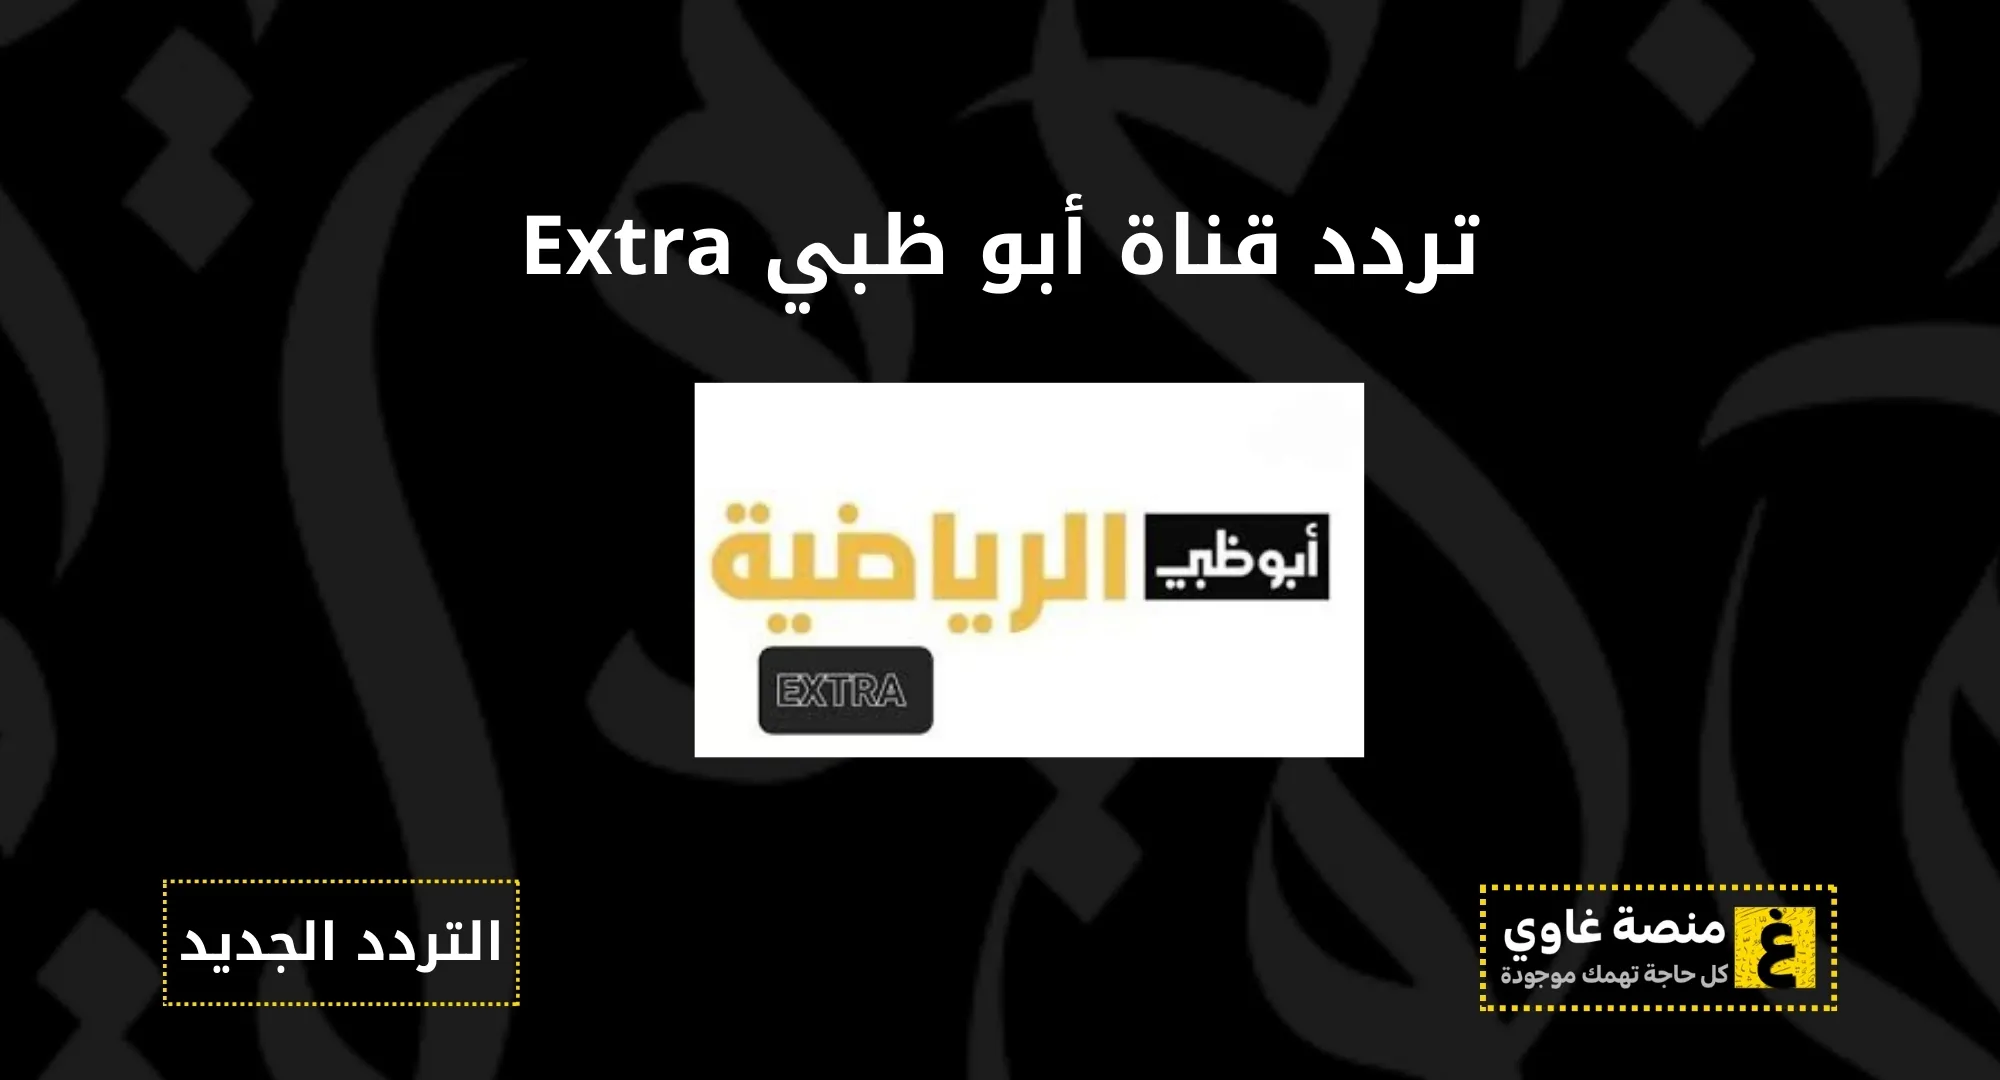 تردد قناة ابو ظبي الرياضية اكسترا